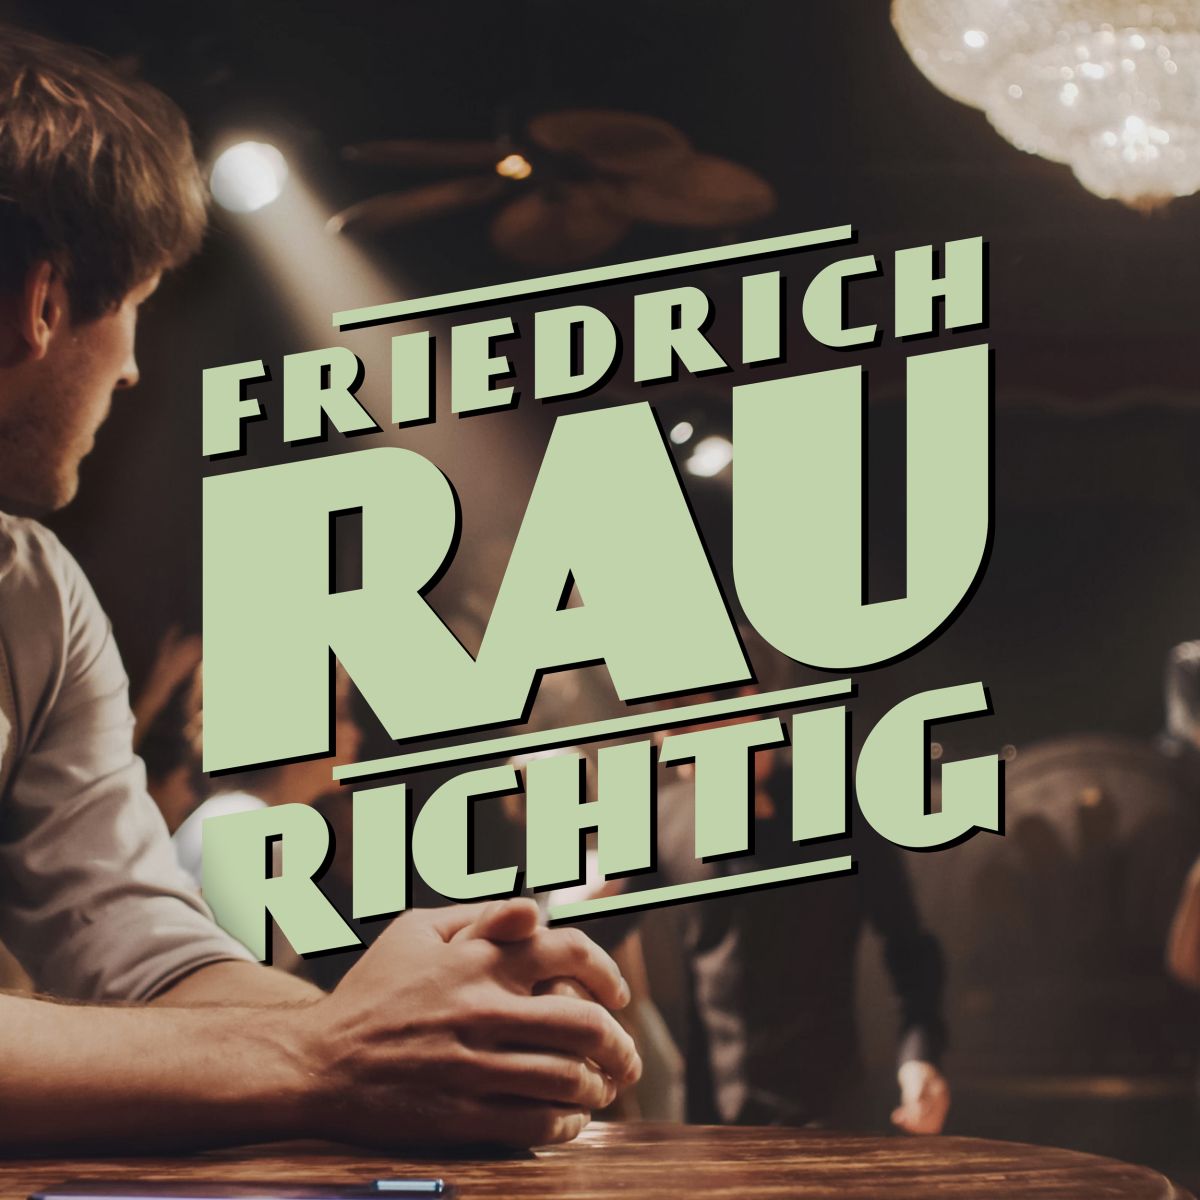 8ff89376d072f546d093af32c351dcc8_XL Friedrich Rau präsentiert seine neue Single "RICHTIG" - musicalradio.de | Musicals kostenlos im Radio